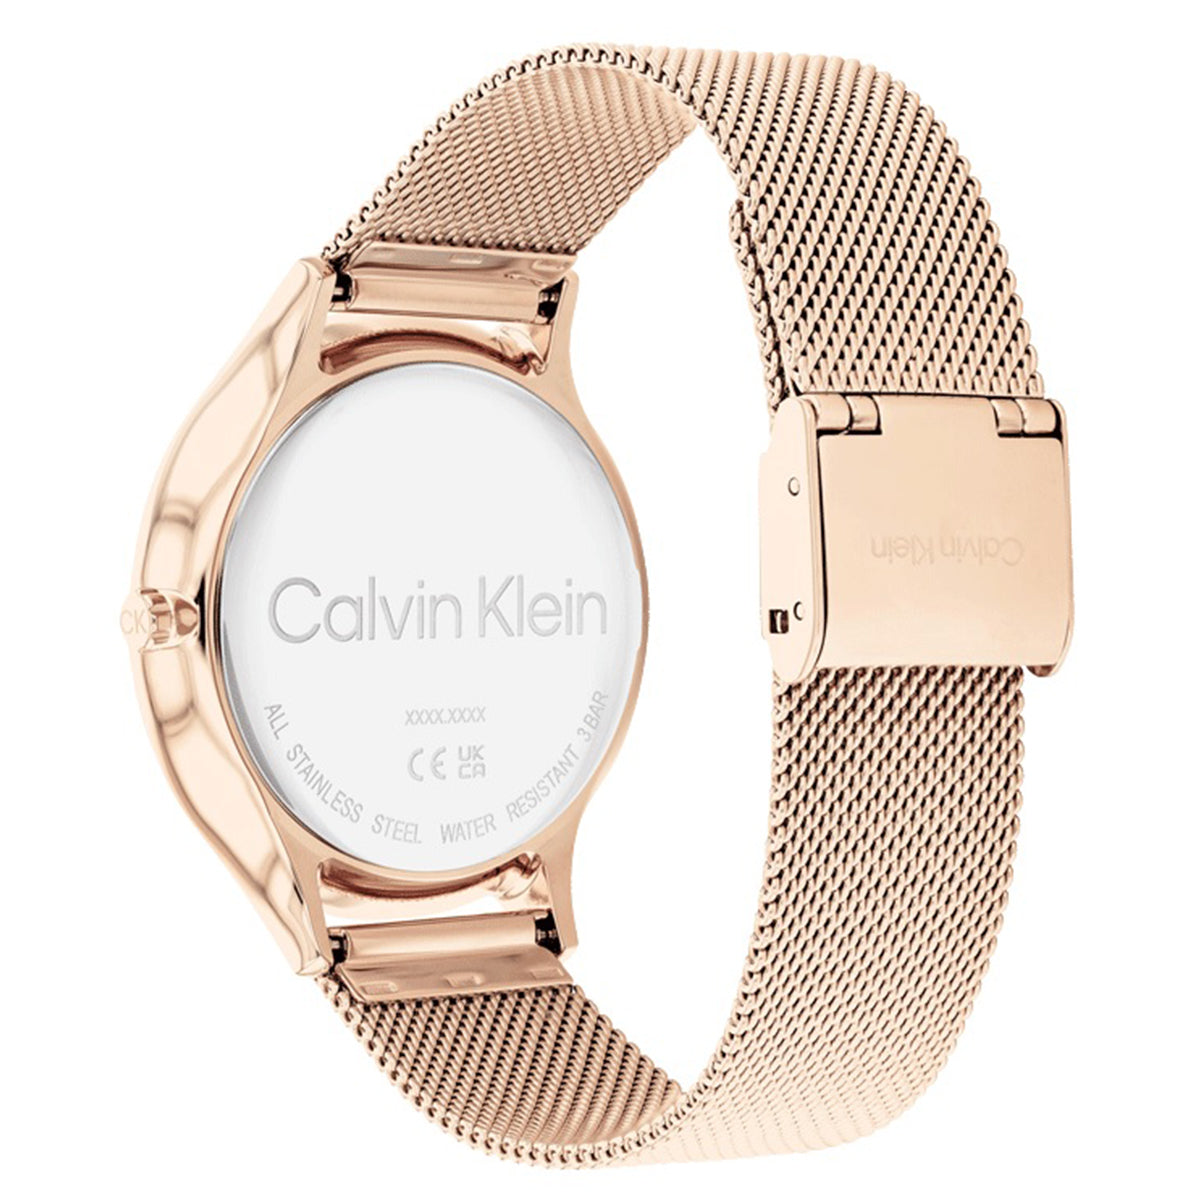 Calvin Klein - Timeless - 25200002